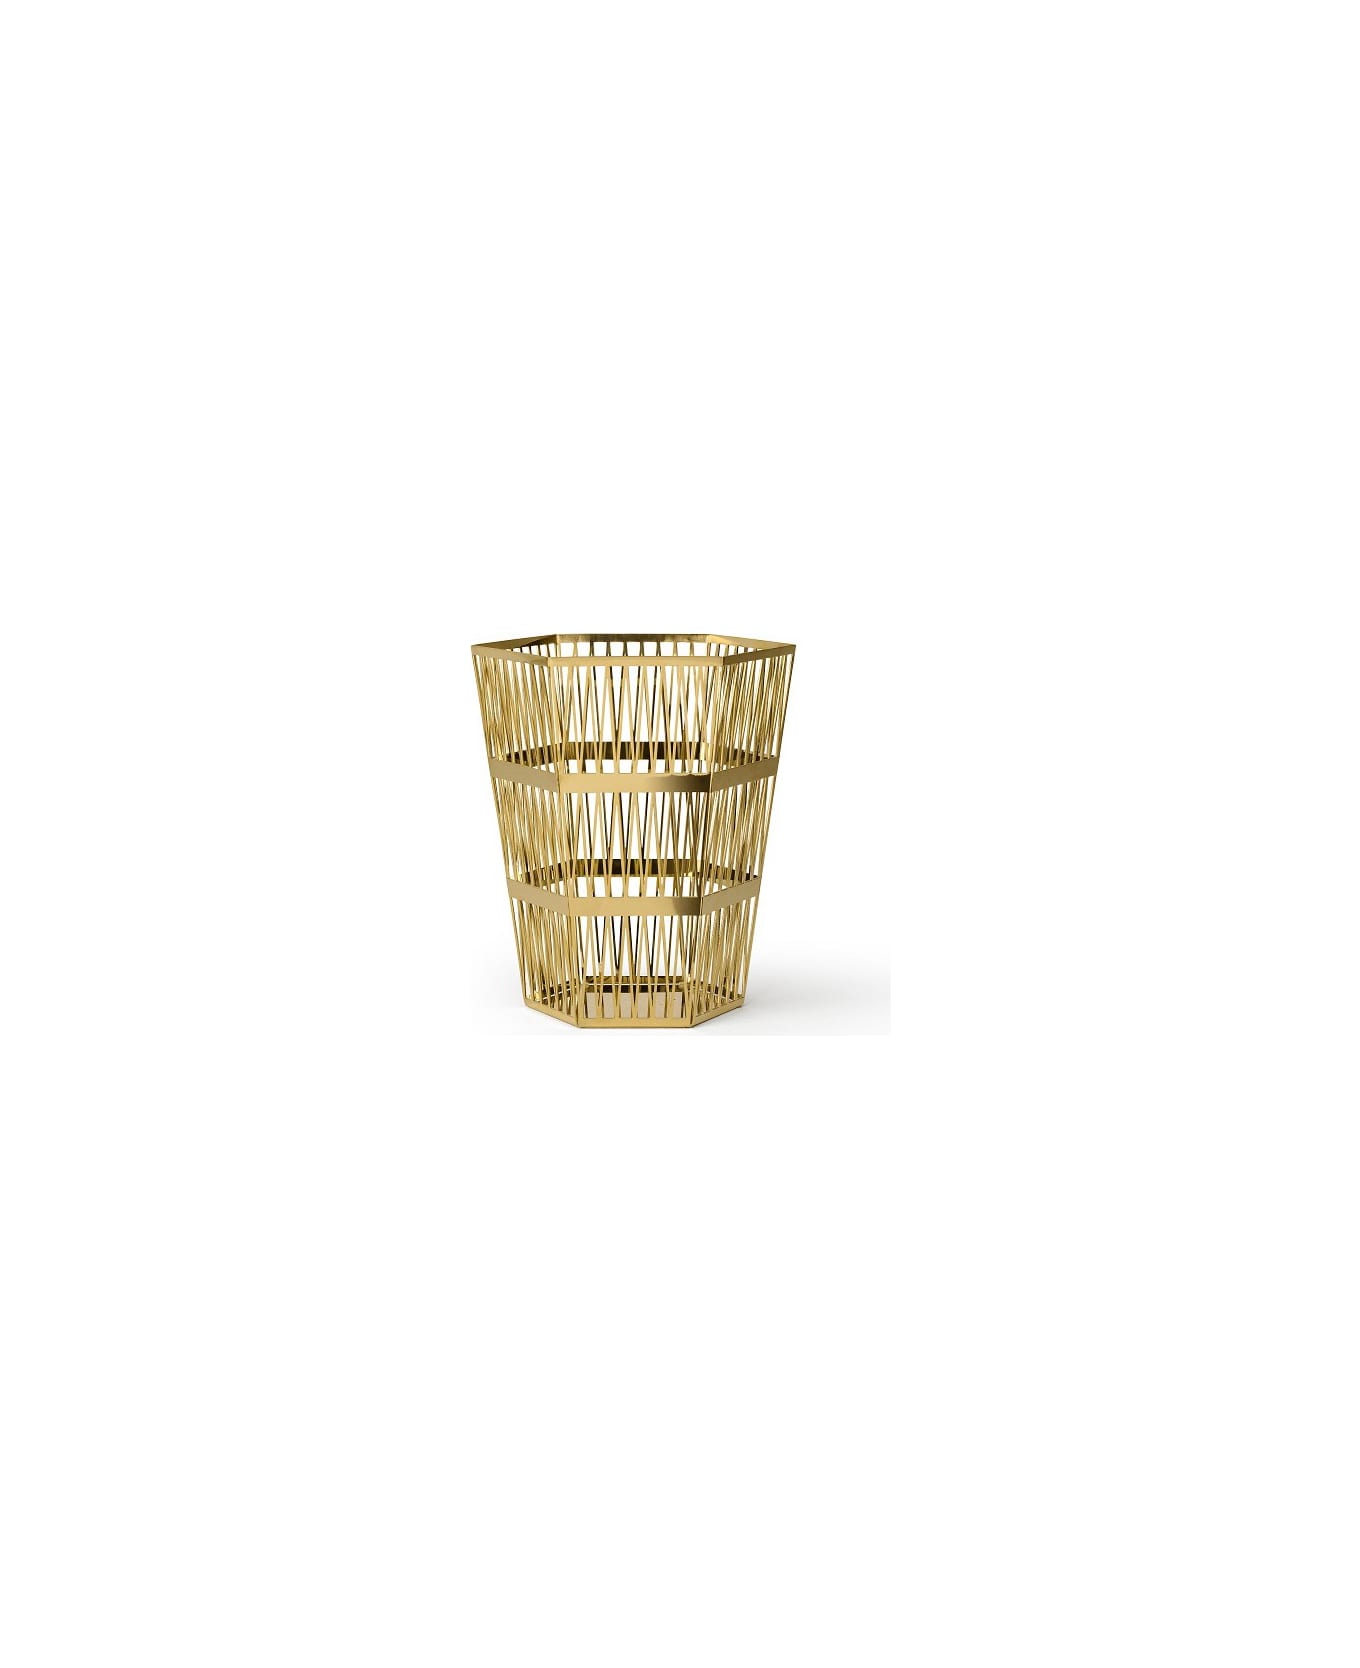 Ghidini 1961 Tip Top - Large Paper Basket Polished Gold - Polished gold